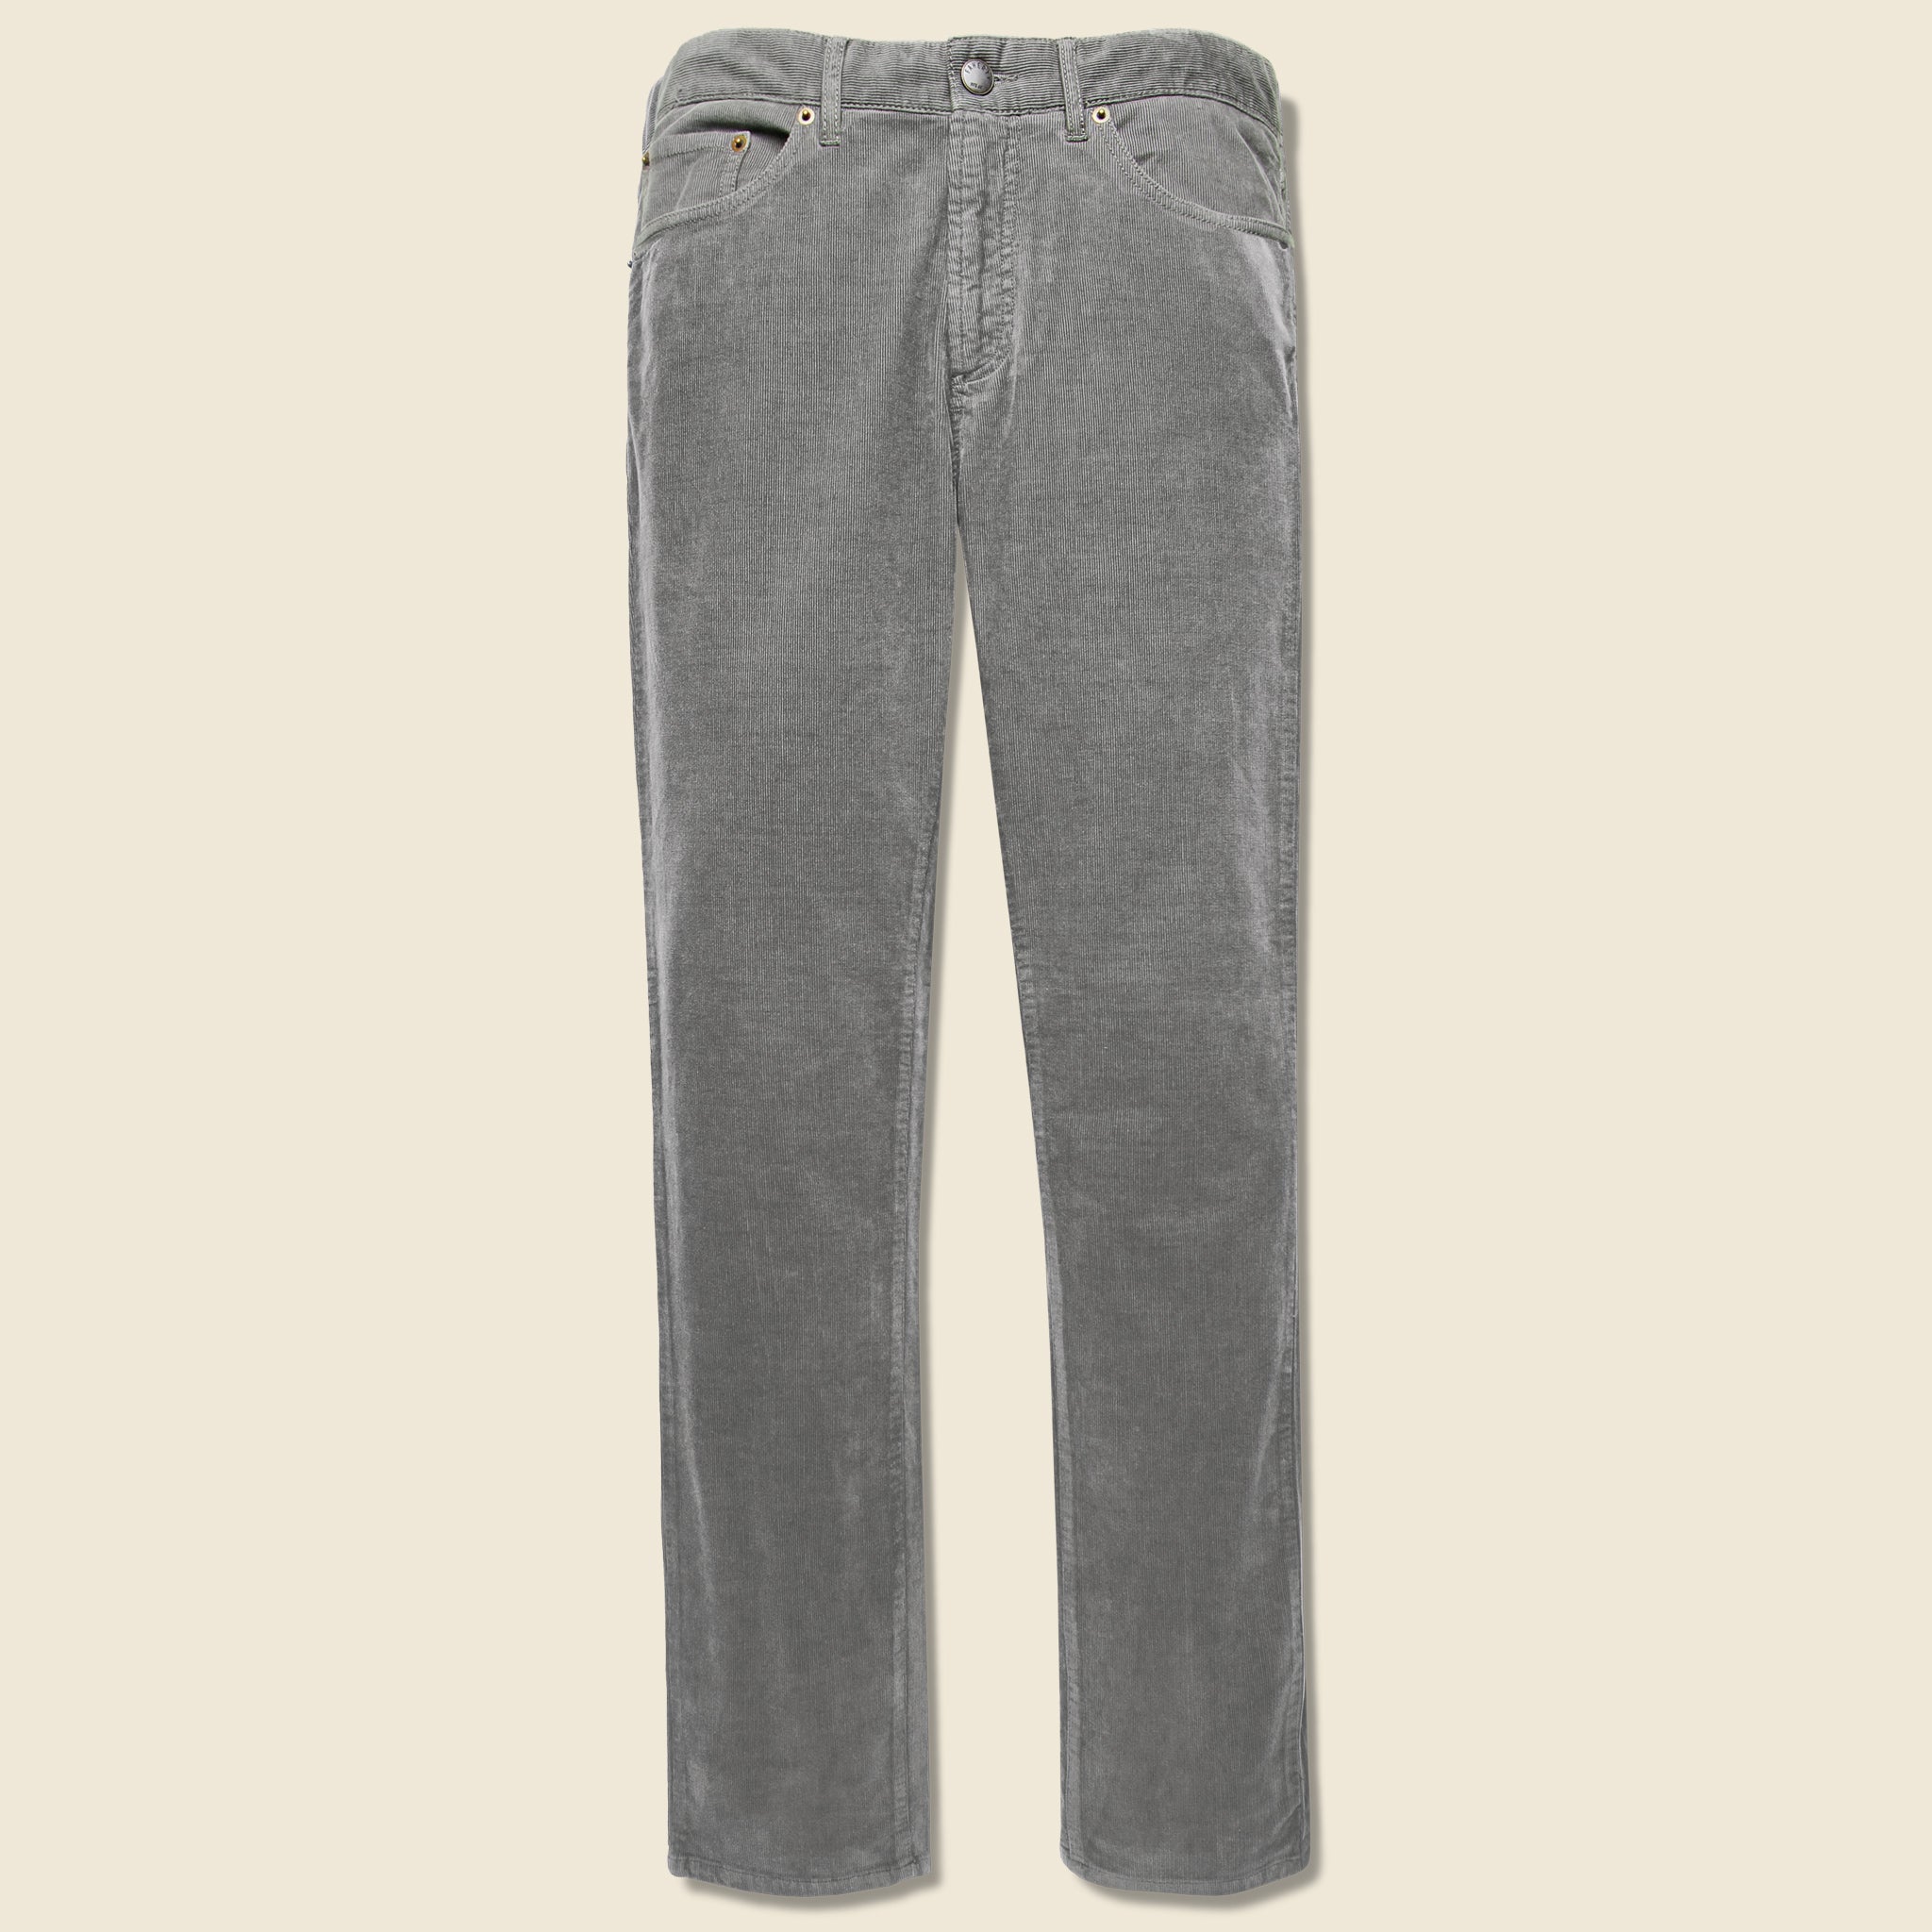 grey corduroy pants